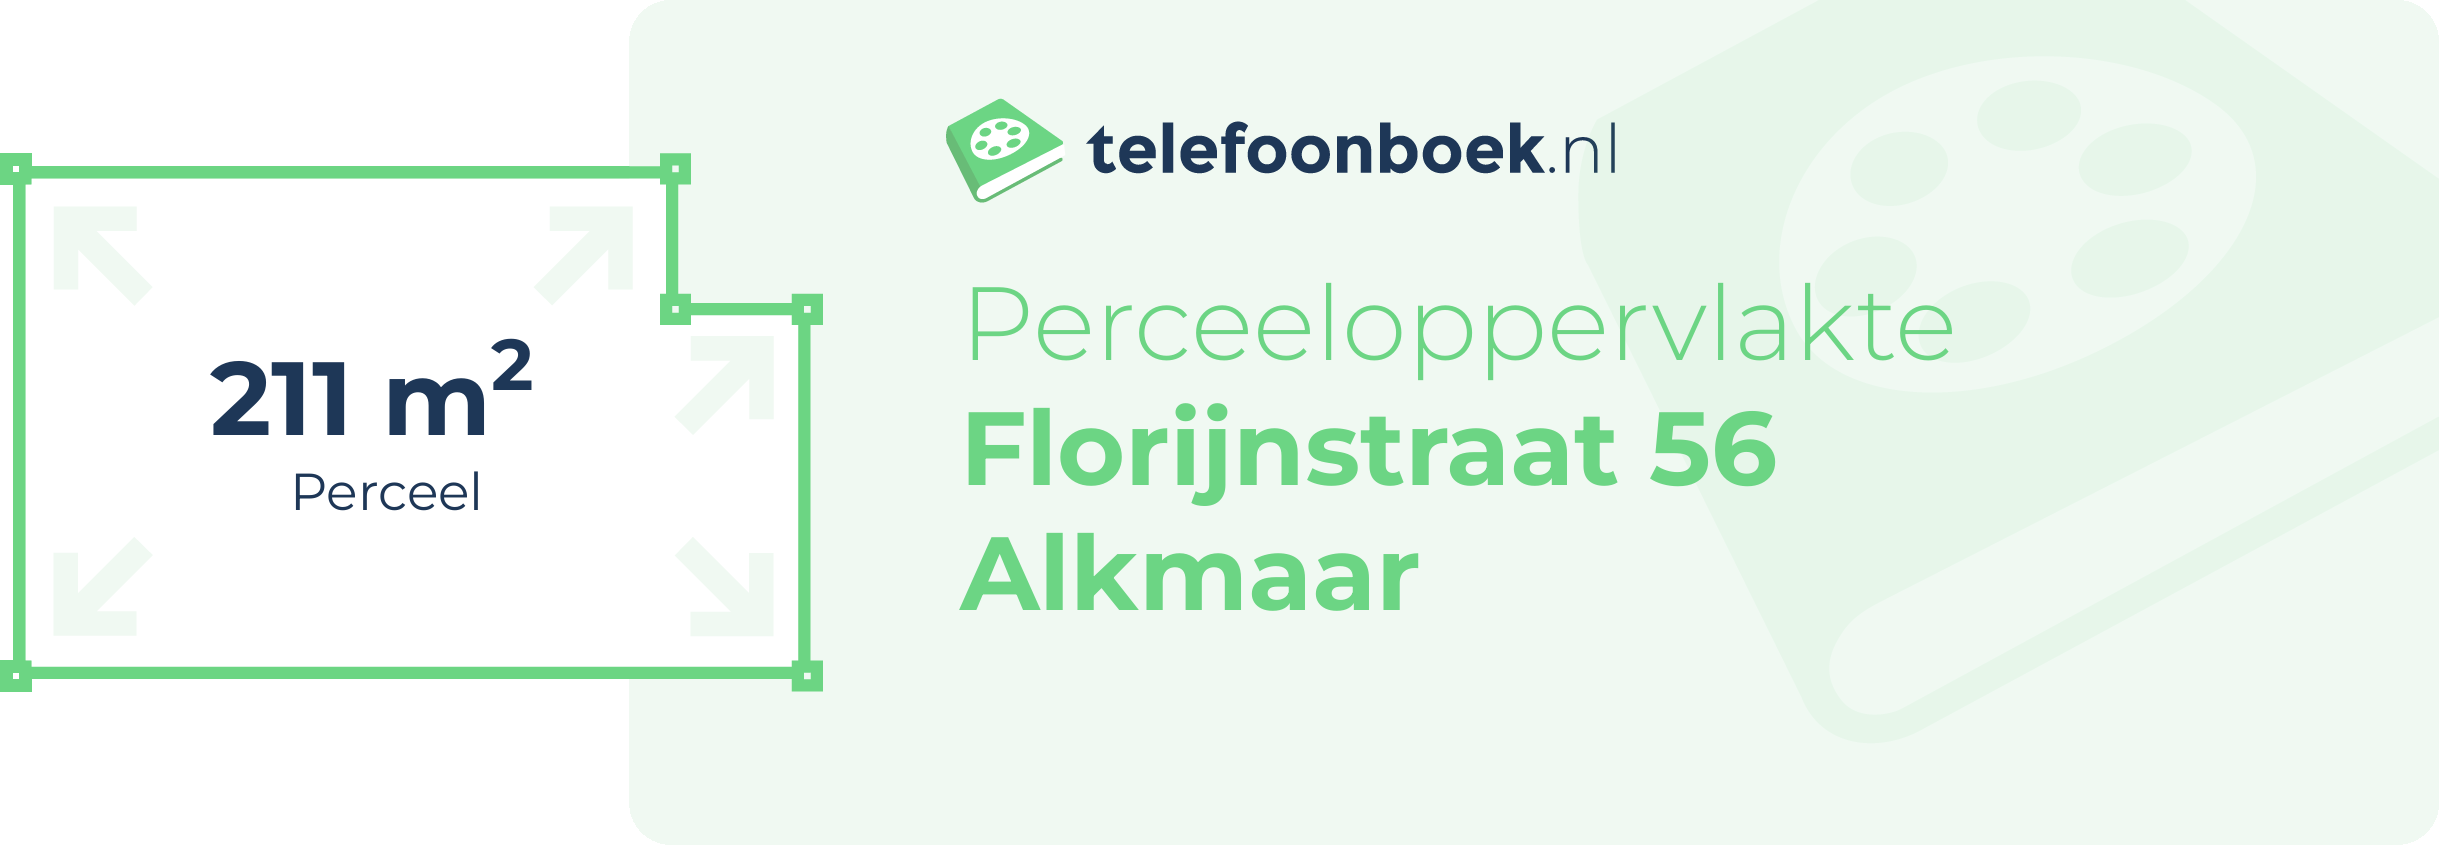 Perceeloppervlakte Florijnstraat 56 Alkmaar